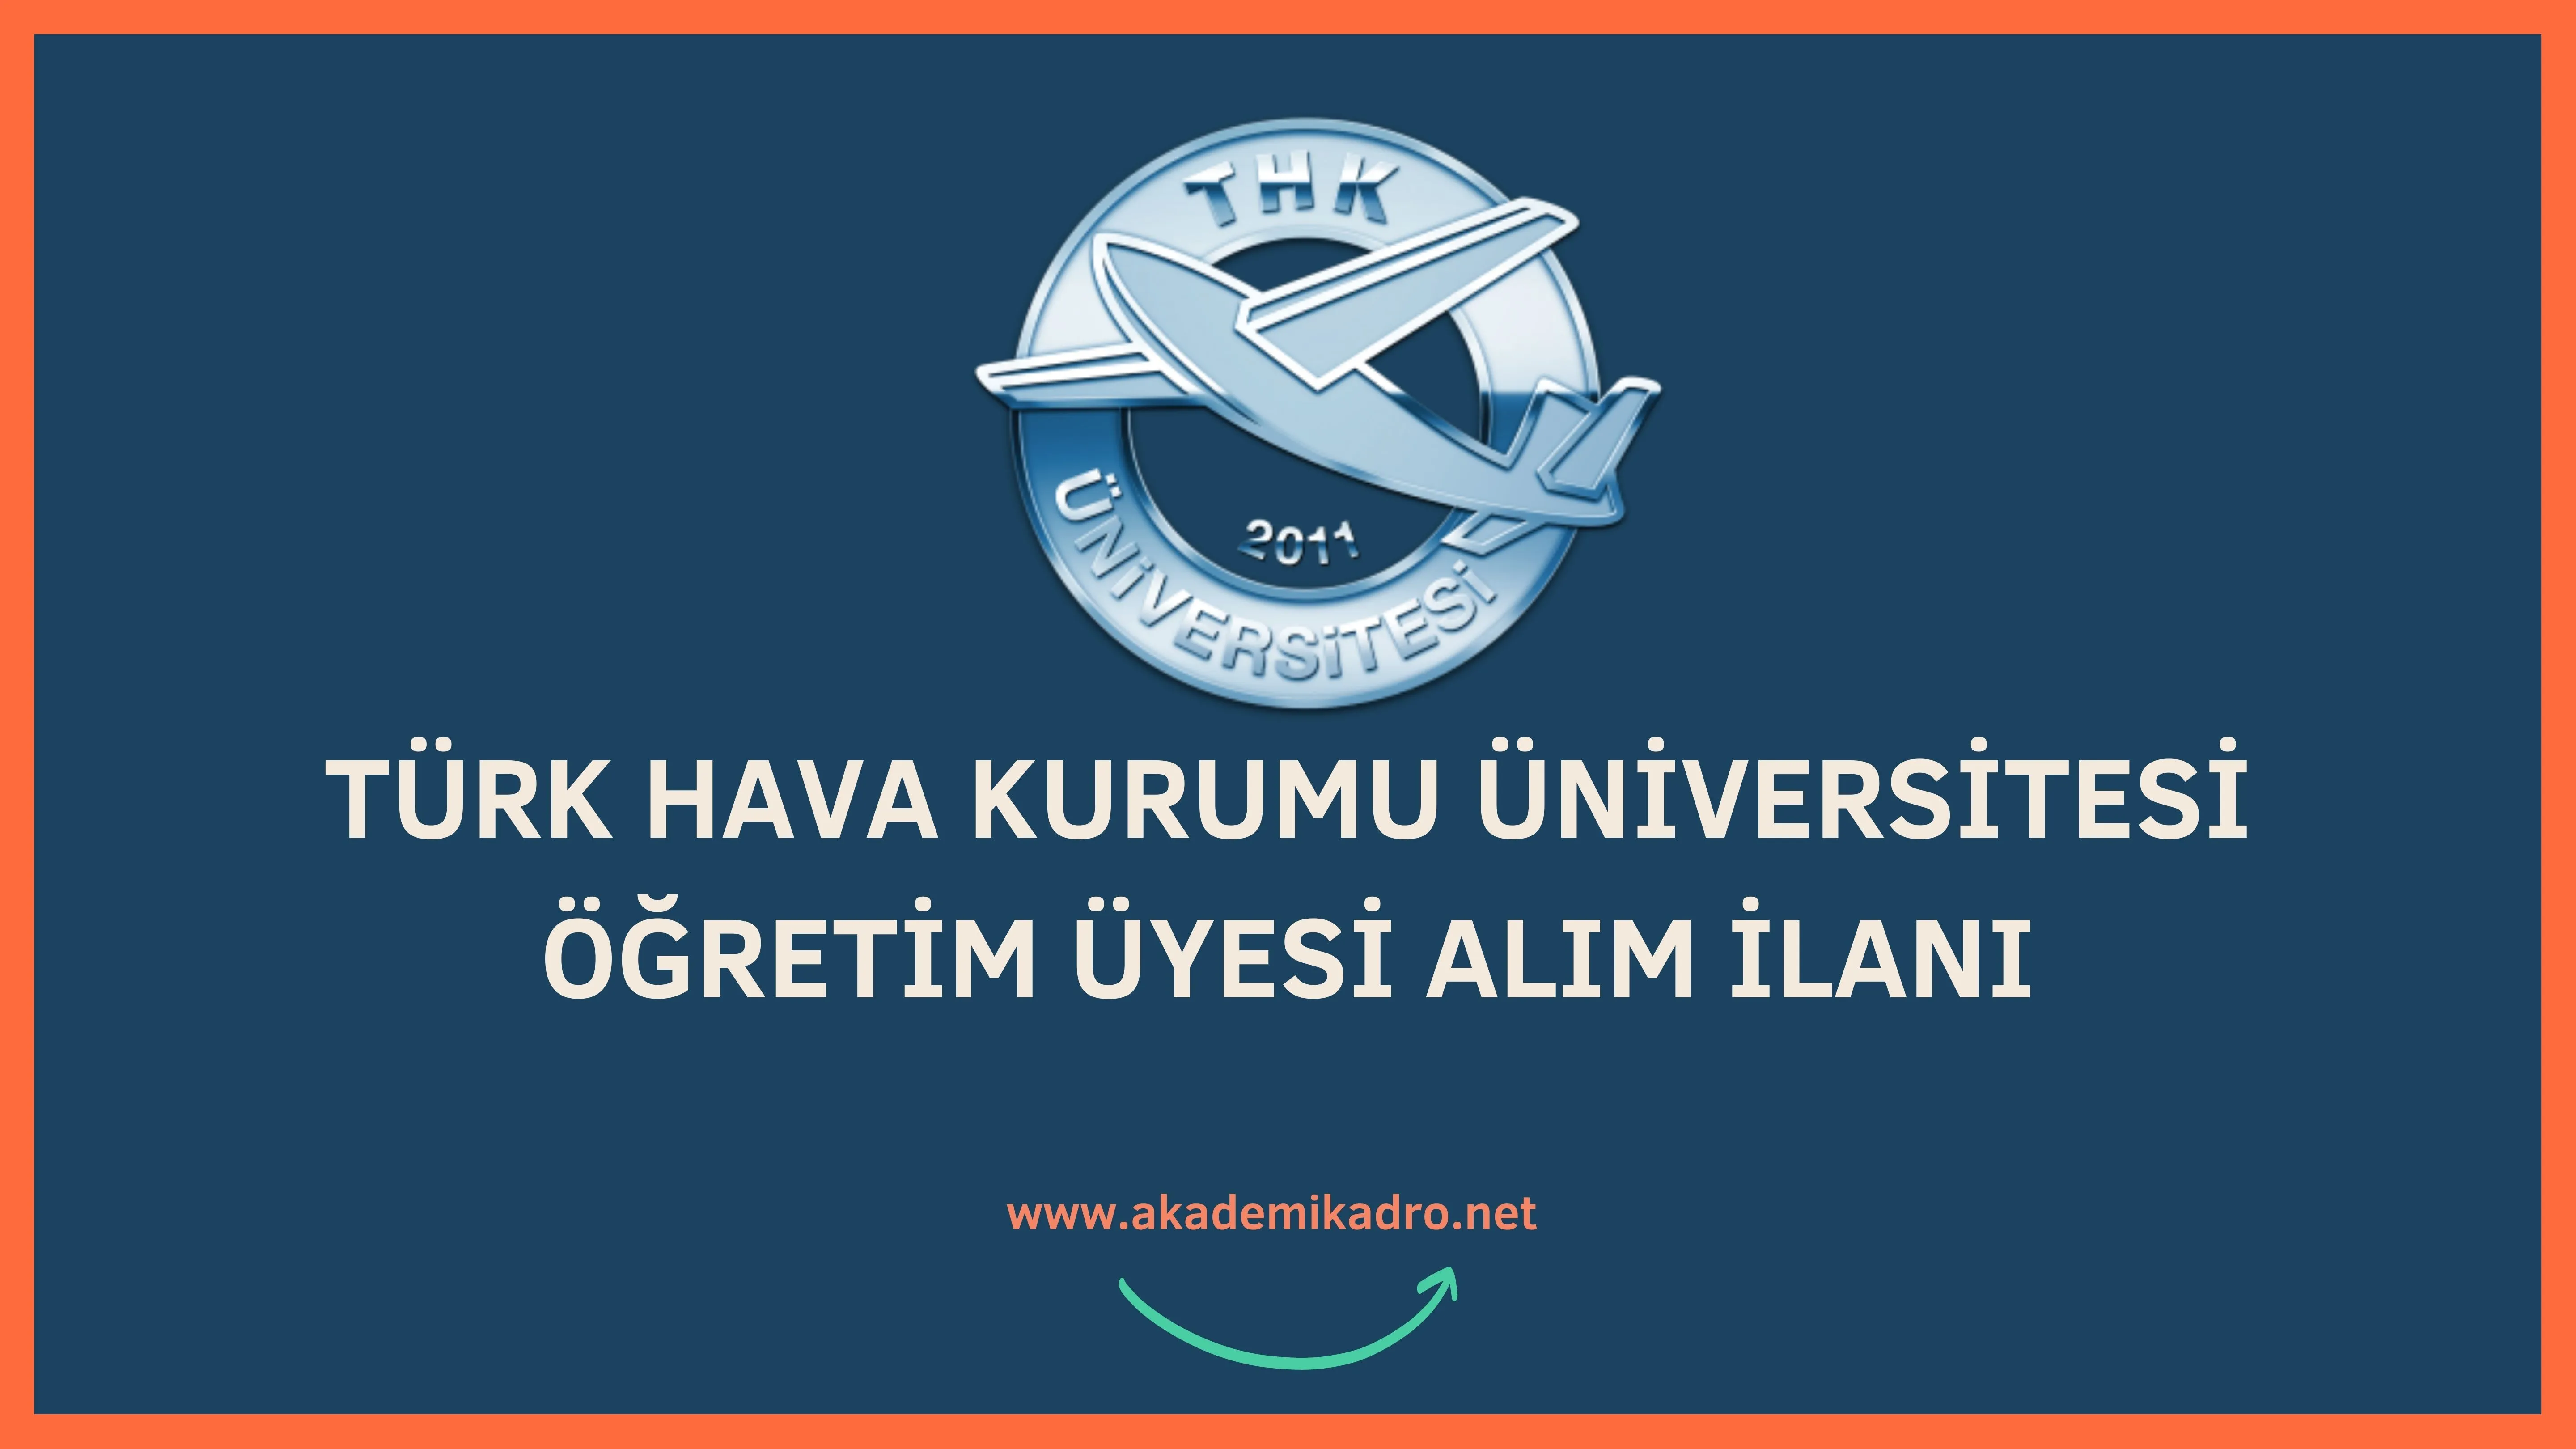 Türk Hava Kurumu Üniversitesi çeşitli branşlarda 4 öğretim üyesi alacak.